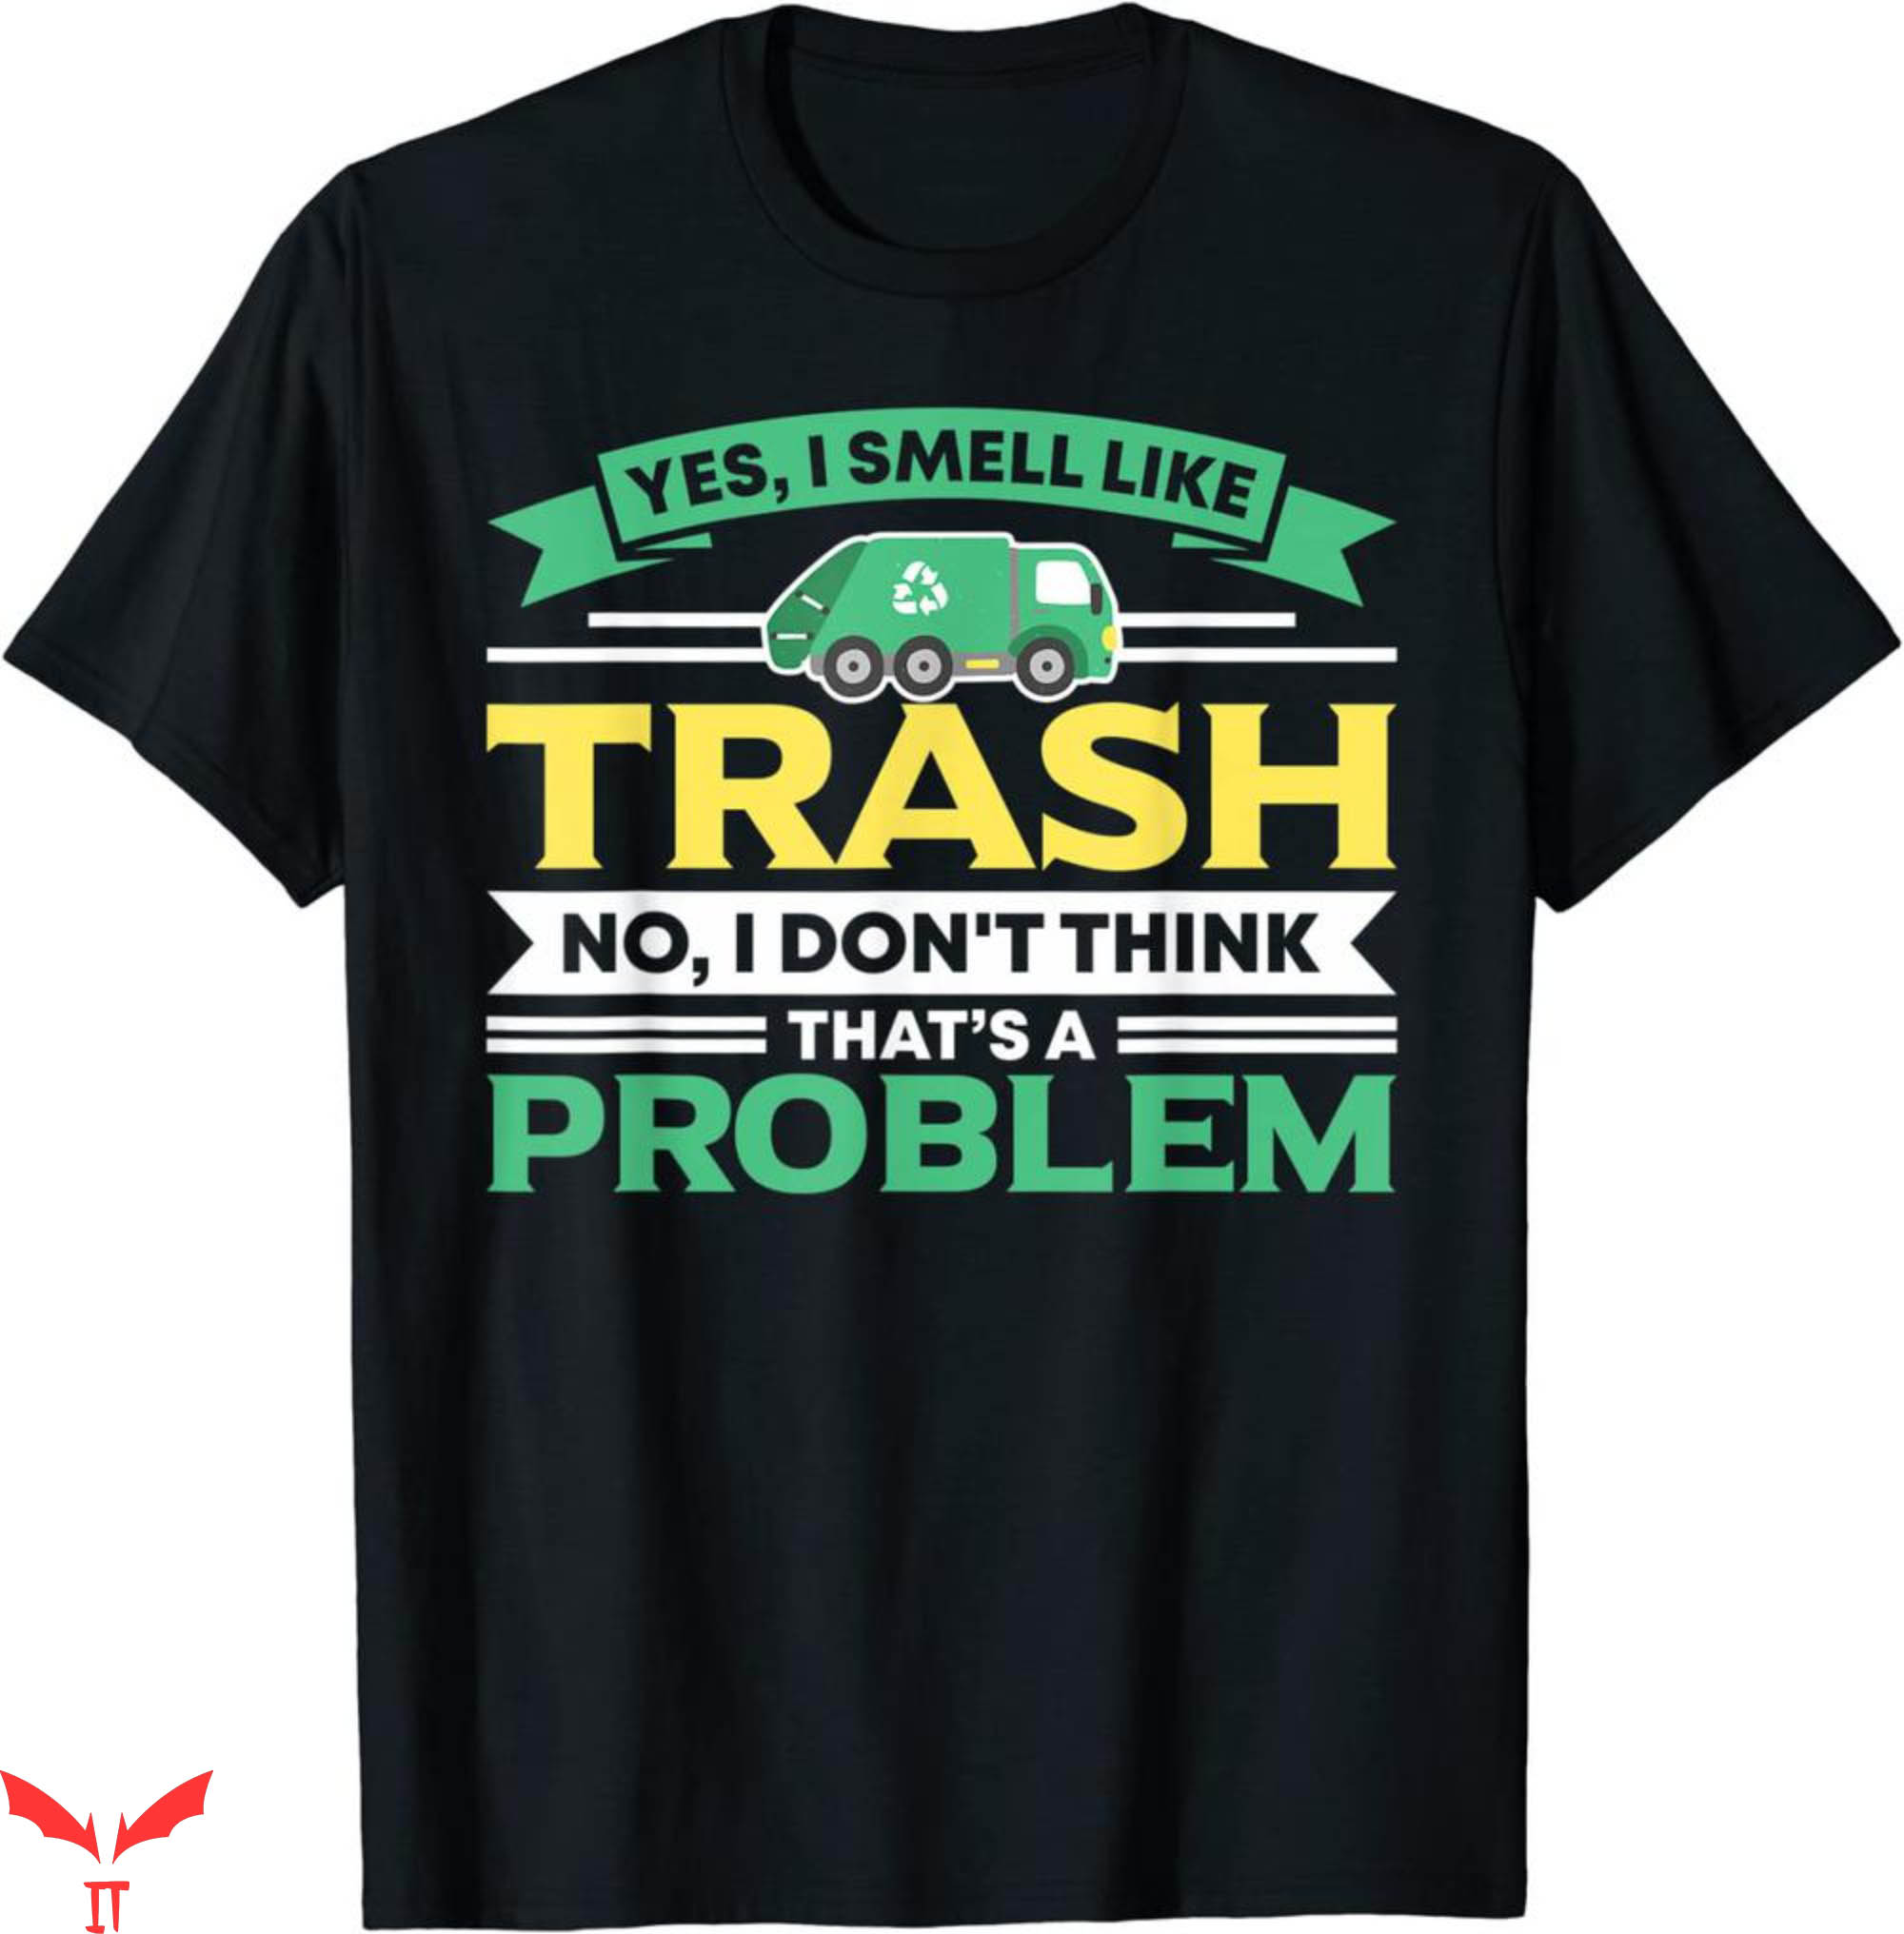 Waste Management T-Shirt I Smell Like Trash No Problem